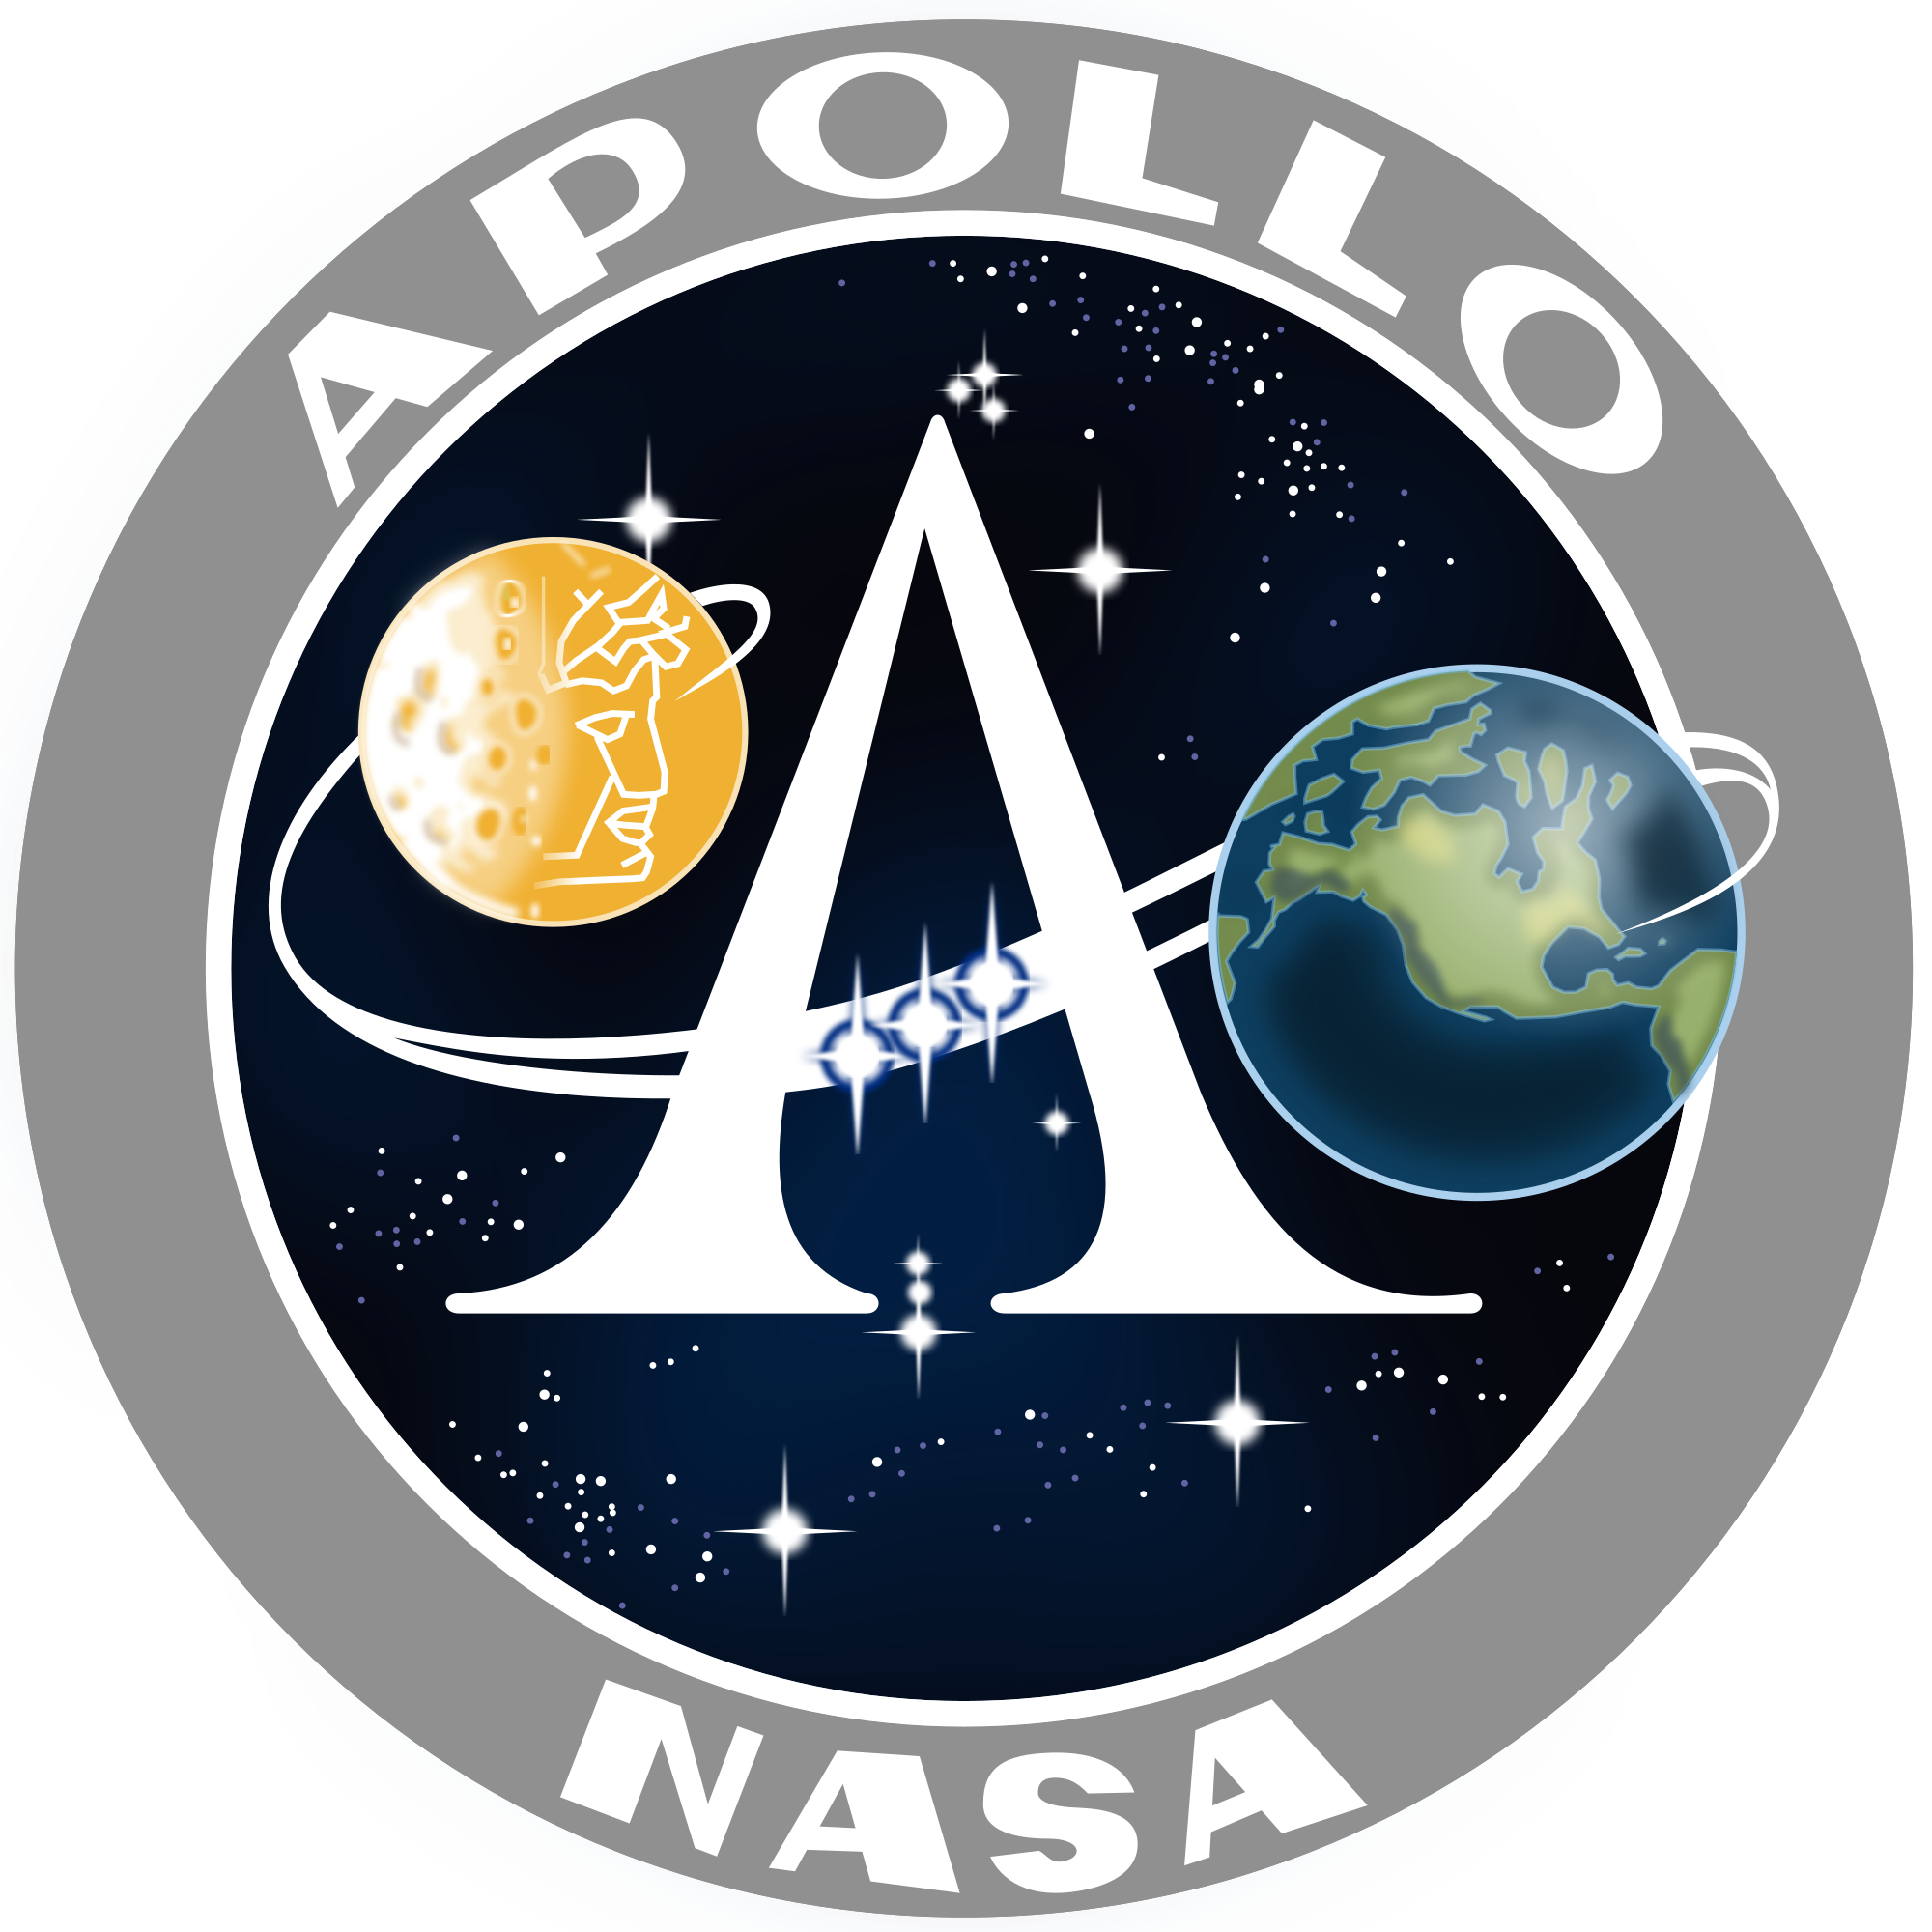 Apollo NASA insignia